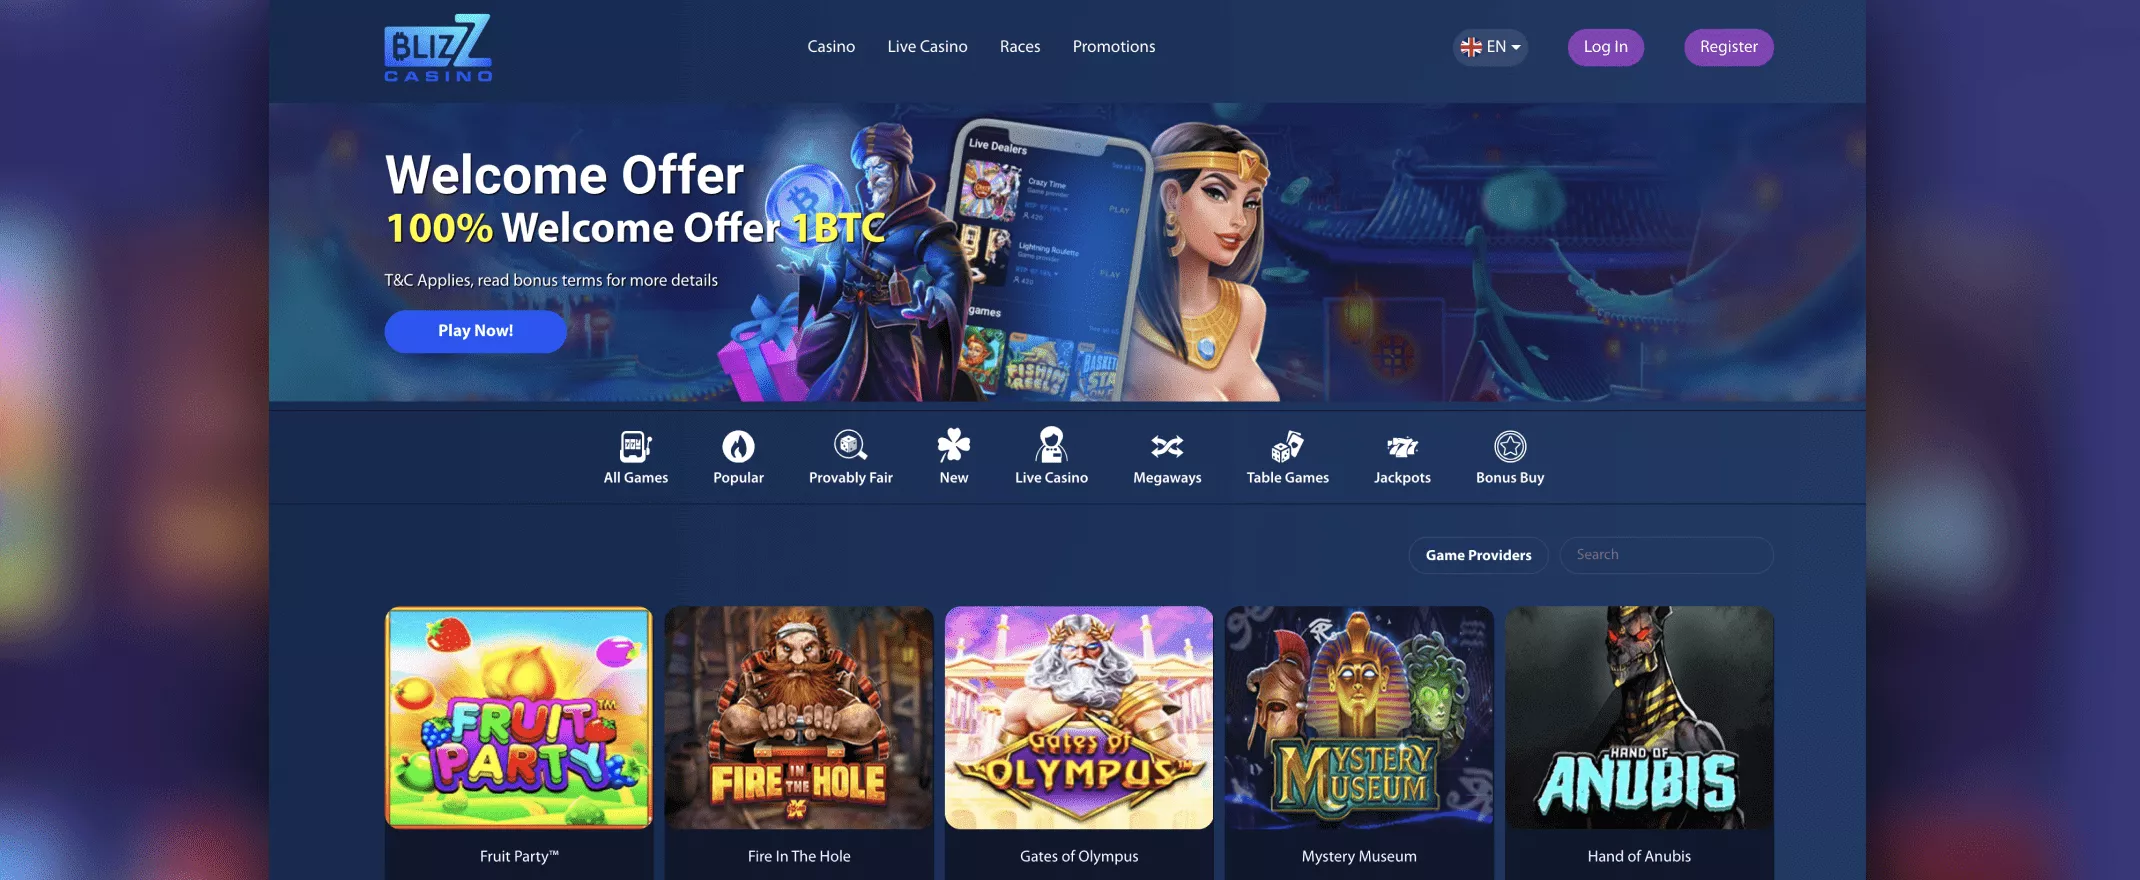 blizz casino homepage screenshot